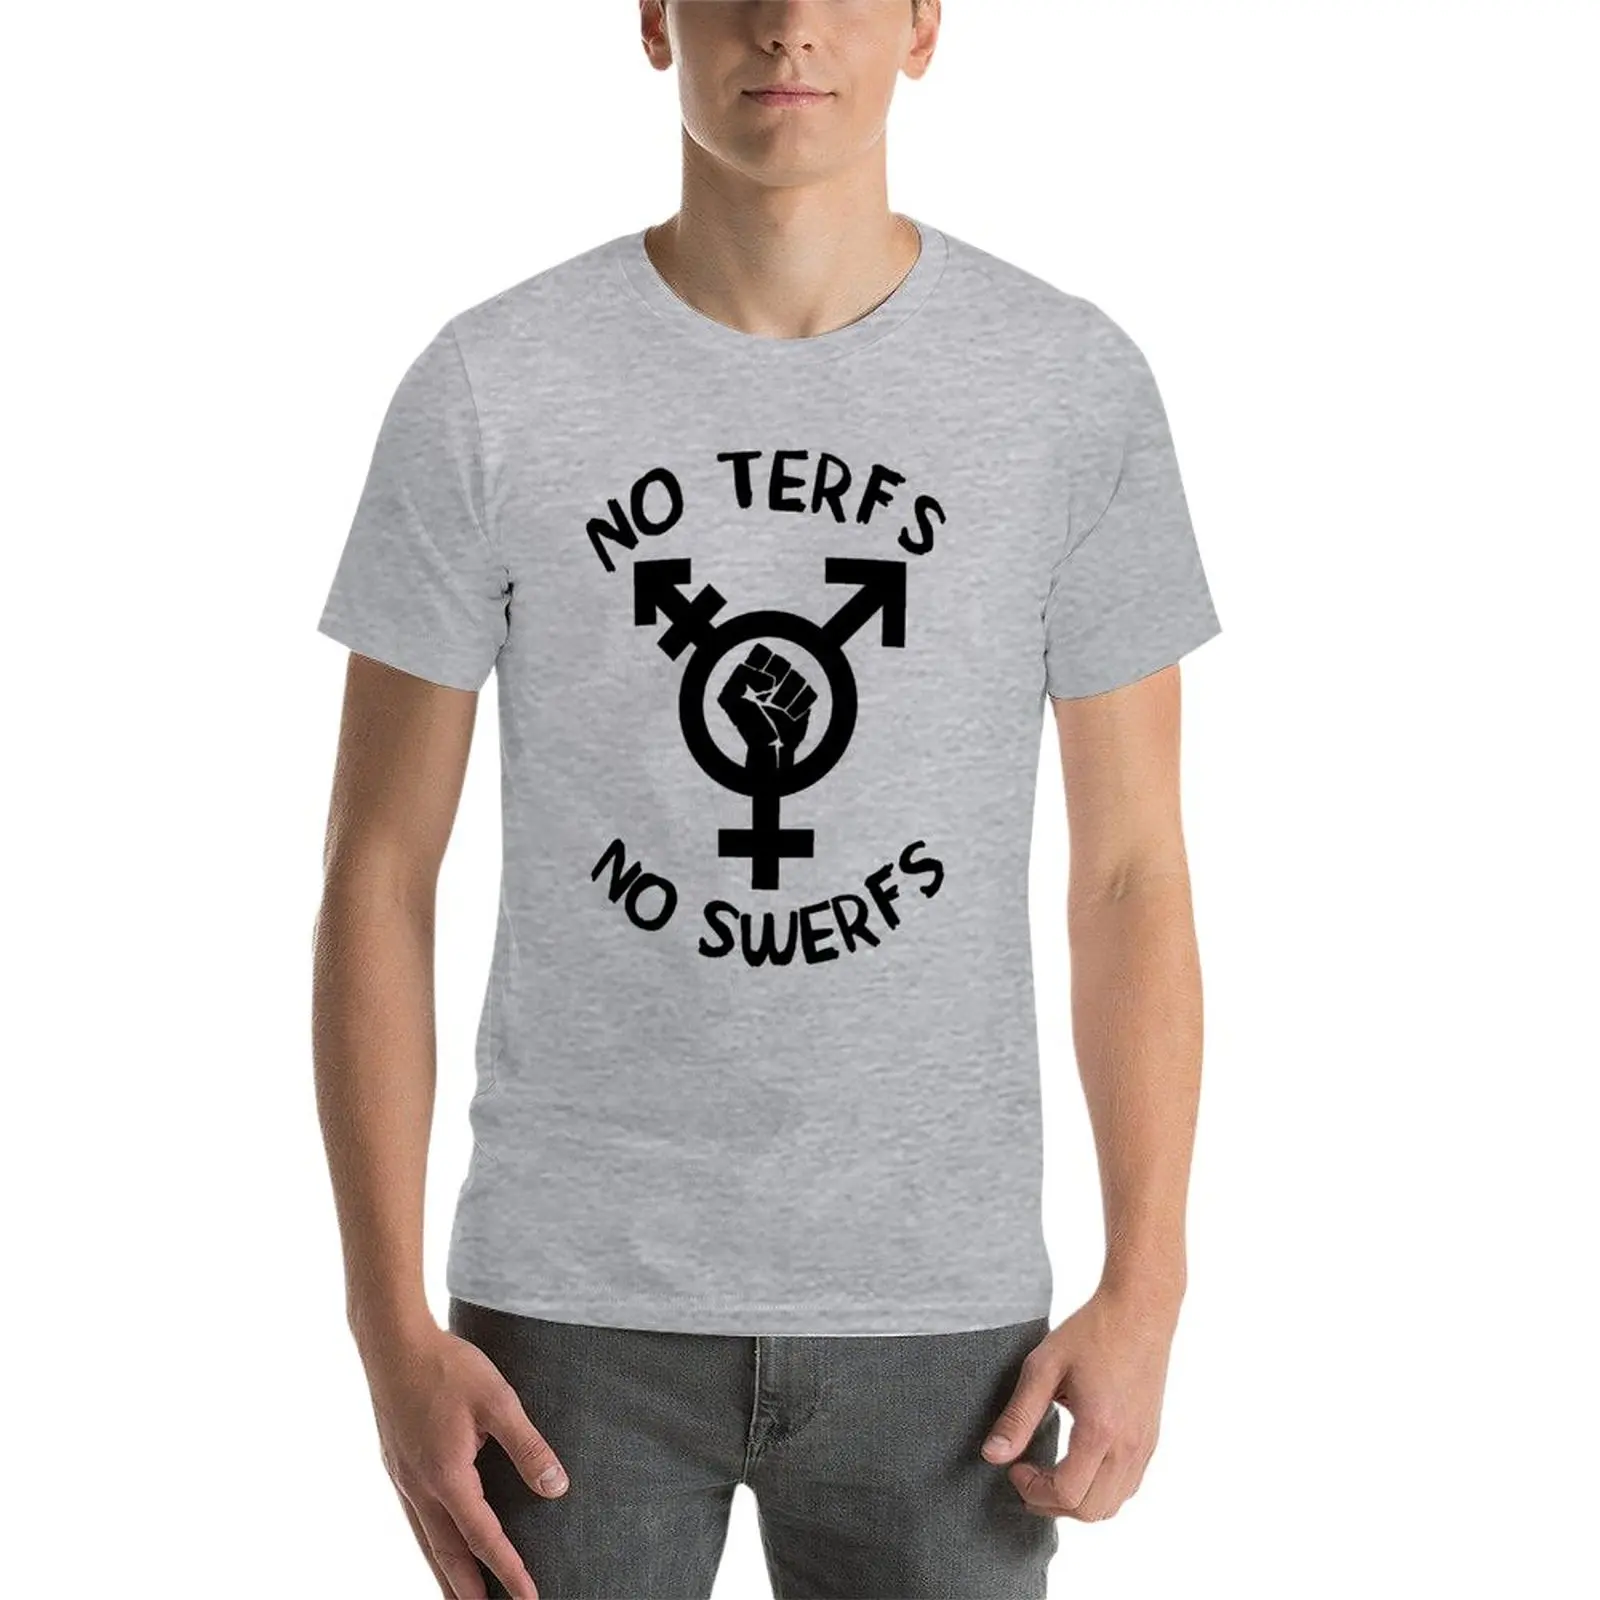 Новые футболки No TERFs No SWERFs - ЛГБТК Трансгендерные Секс-работники, Блузки, футболки, простые футболки, Мужские футболки Изображение 2